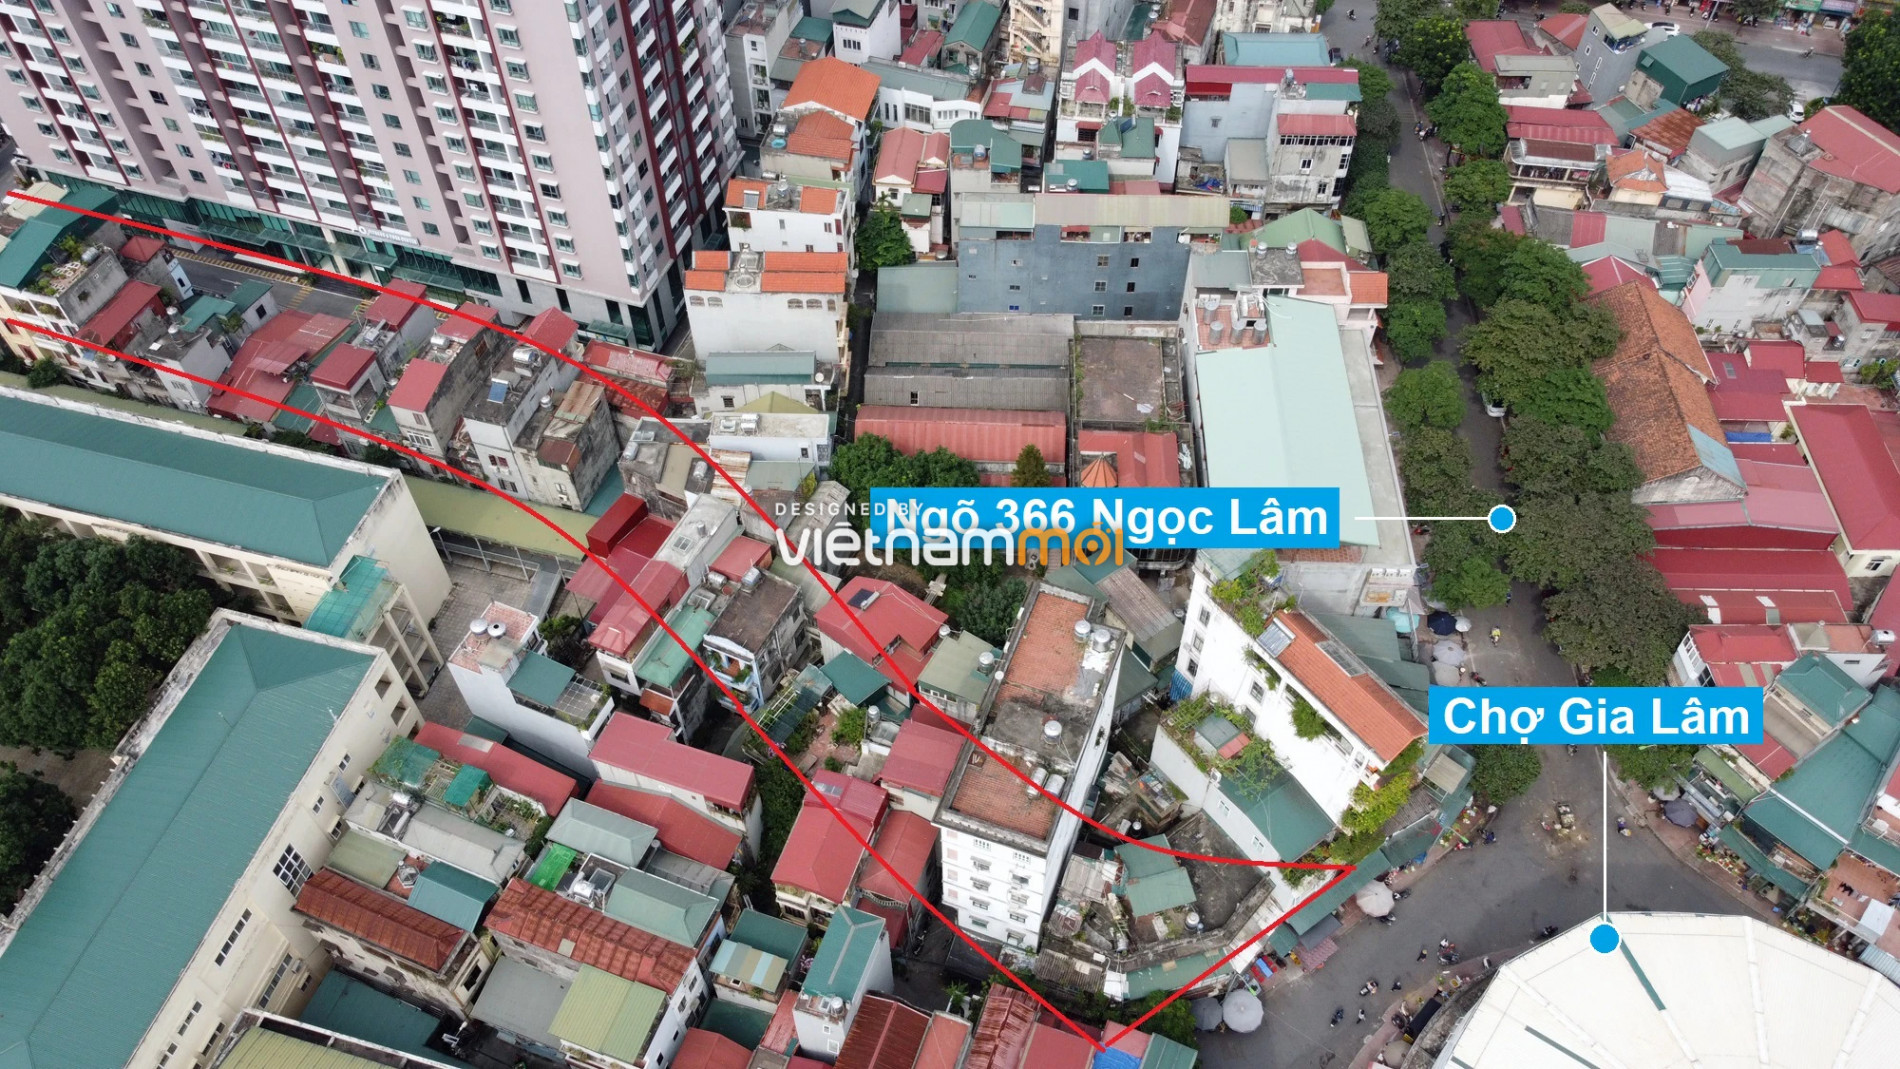 Những khu đất sắp thu hồi để mở đường ở phường Ngọc Lâm, Long Biên, Hà Nội (phần 2) - Ảnh 13.